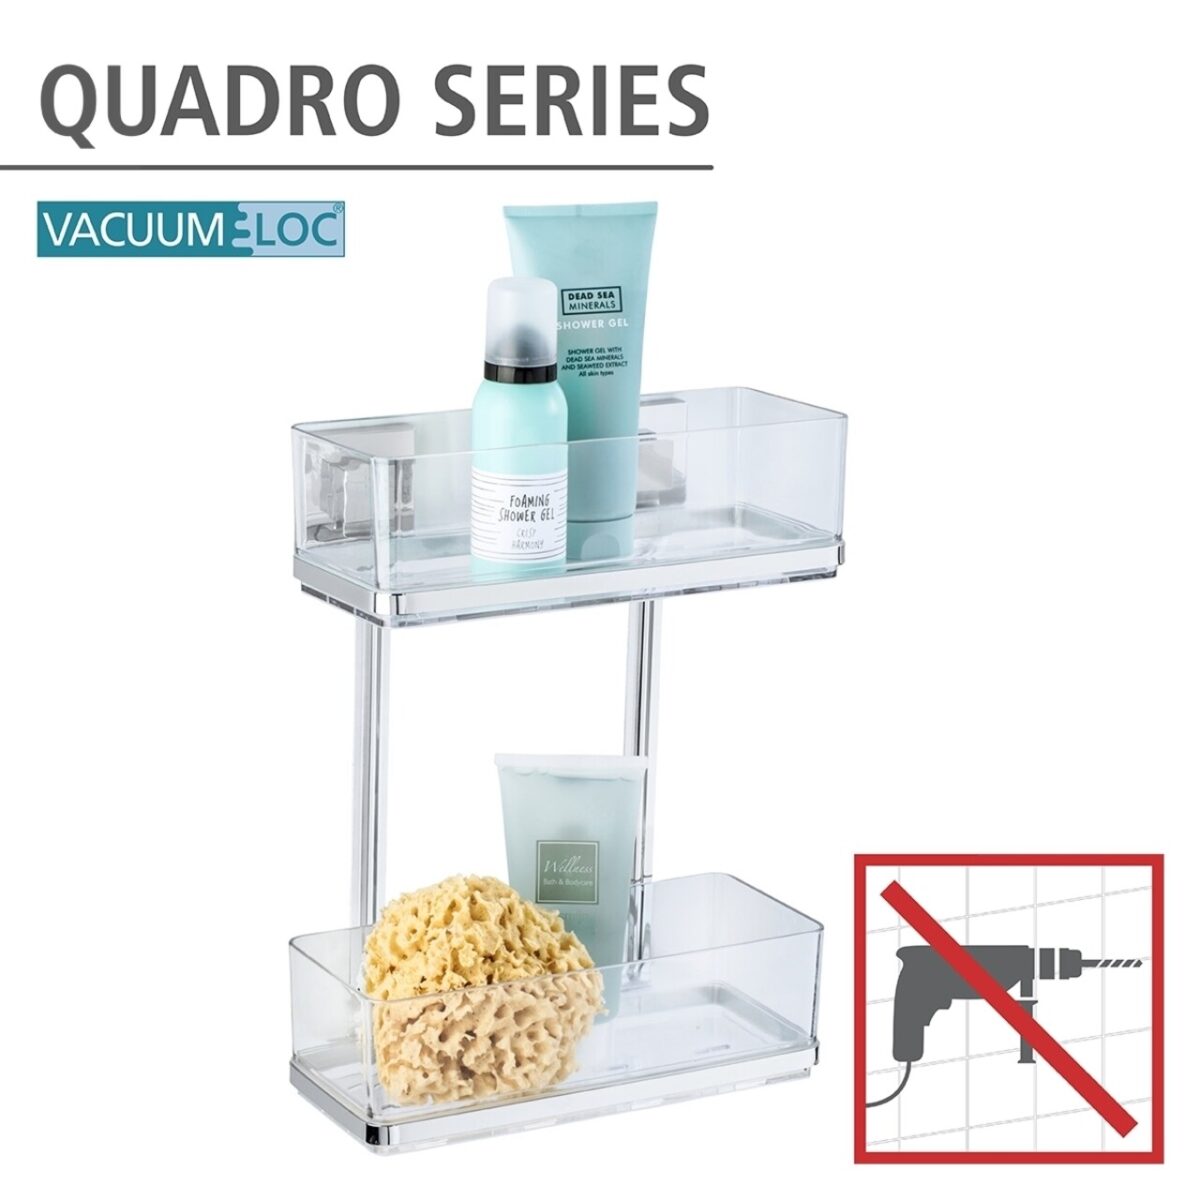 Polita pentru baie Wenko Maxi Quadro Vacuum-Loc® 25.5x32.5x14cm inox/plastic